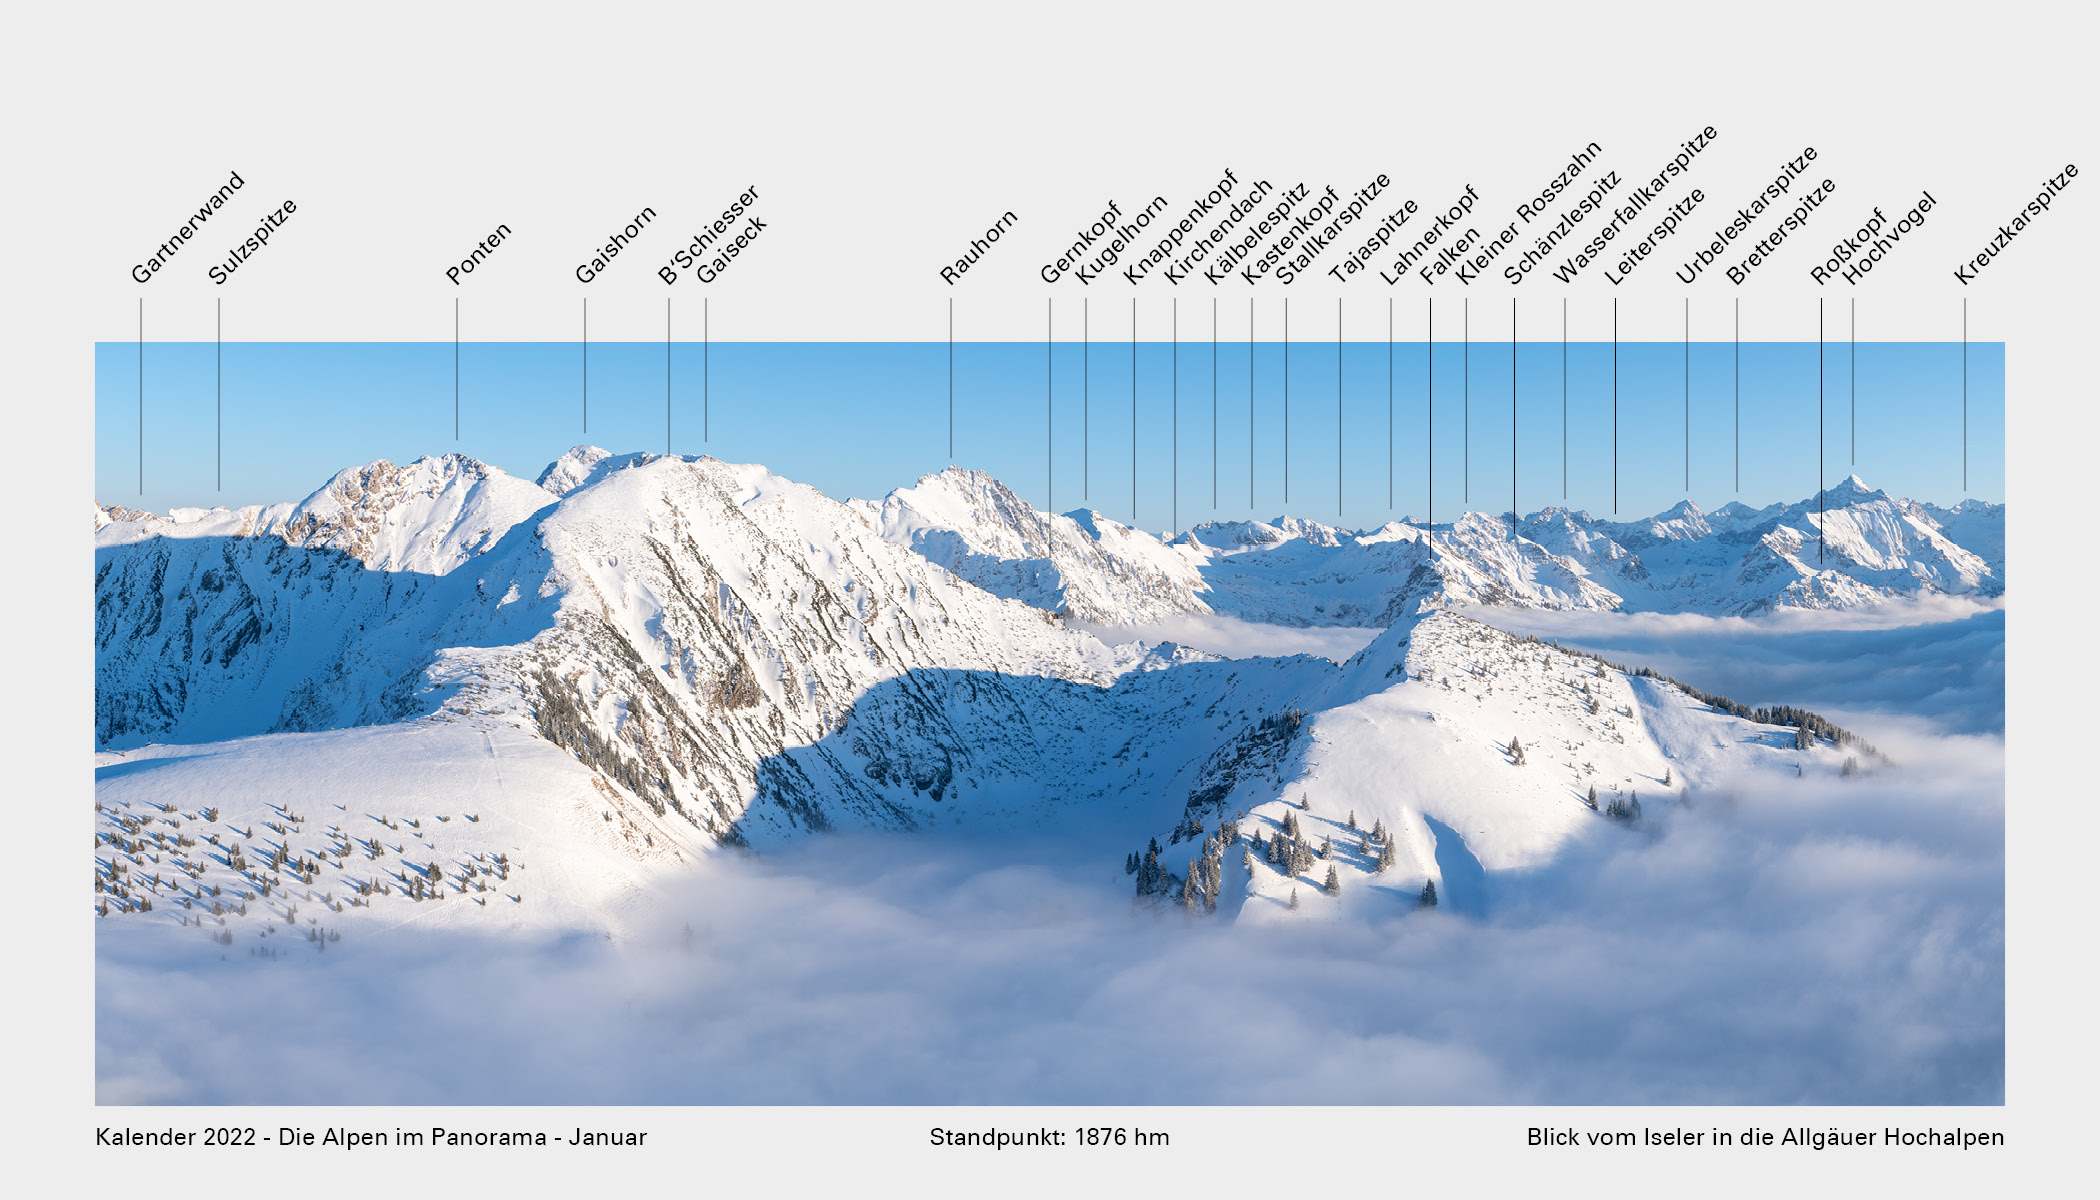 Kalender_2022_Die_Alpen_im_Panorama_Gipfel_